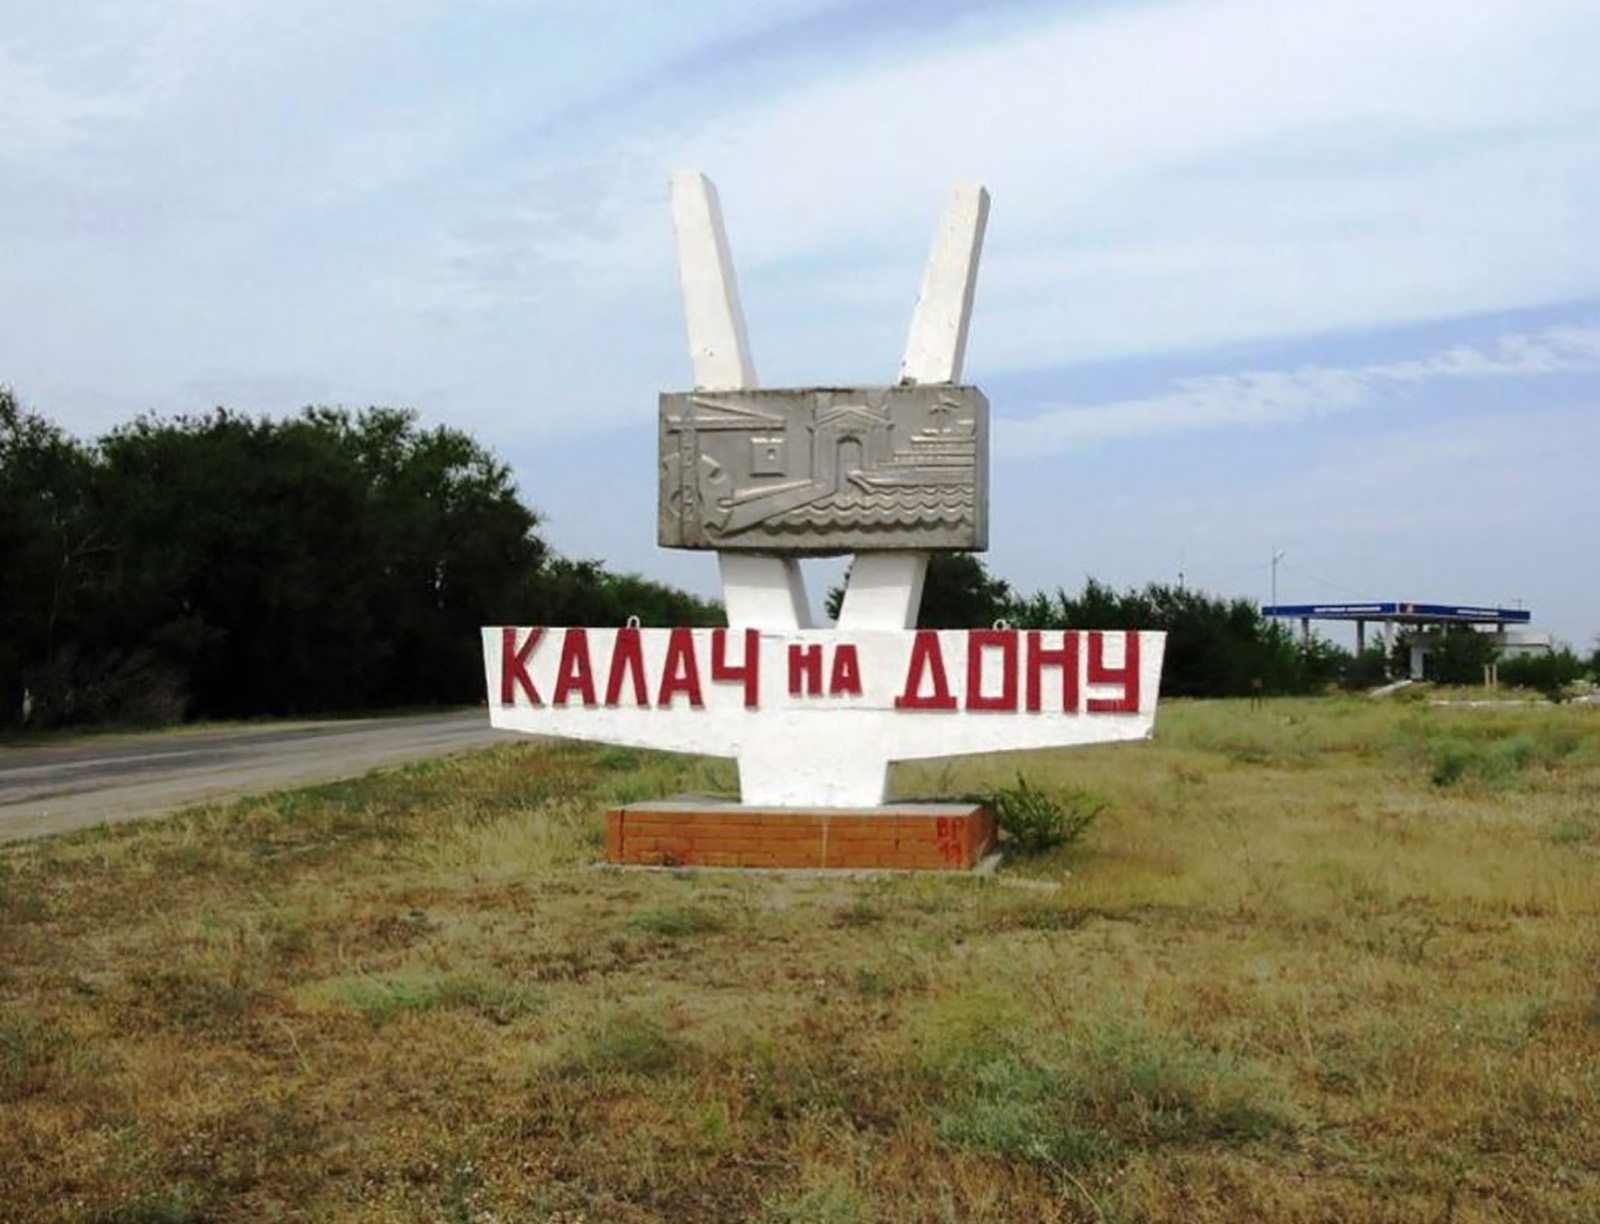 Калач-на-Дону Волгоградская область